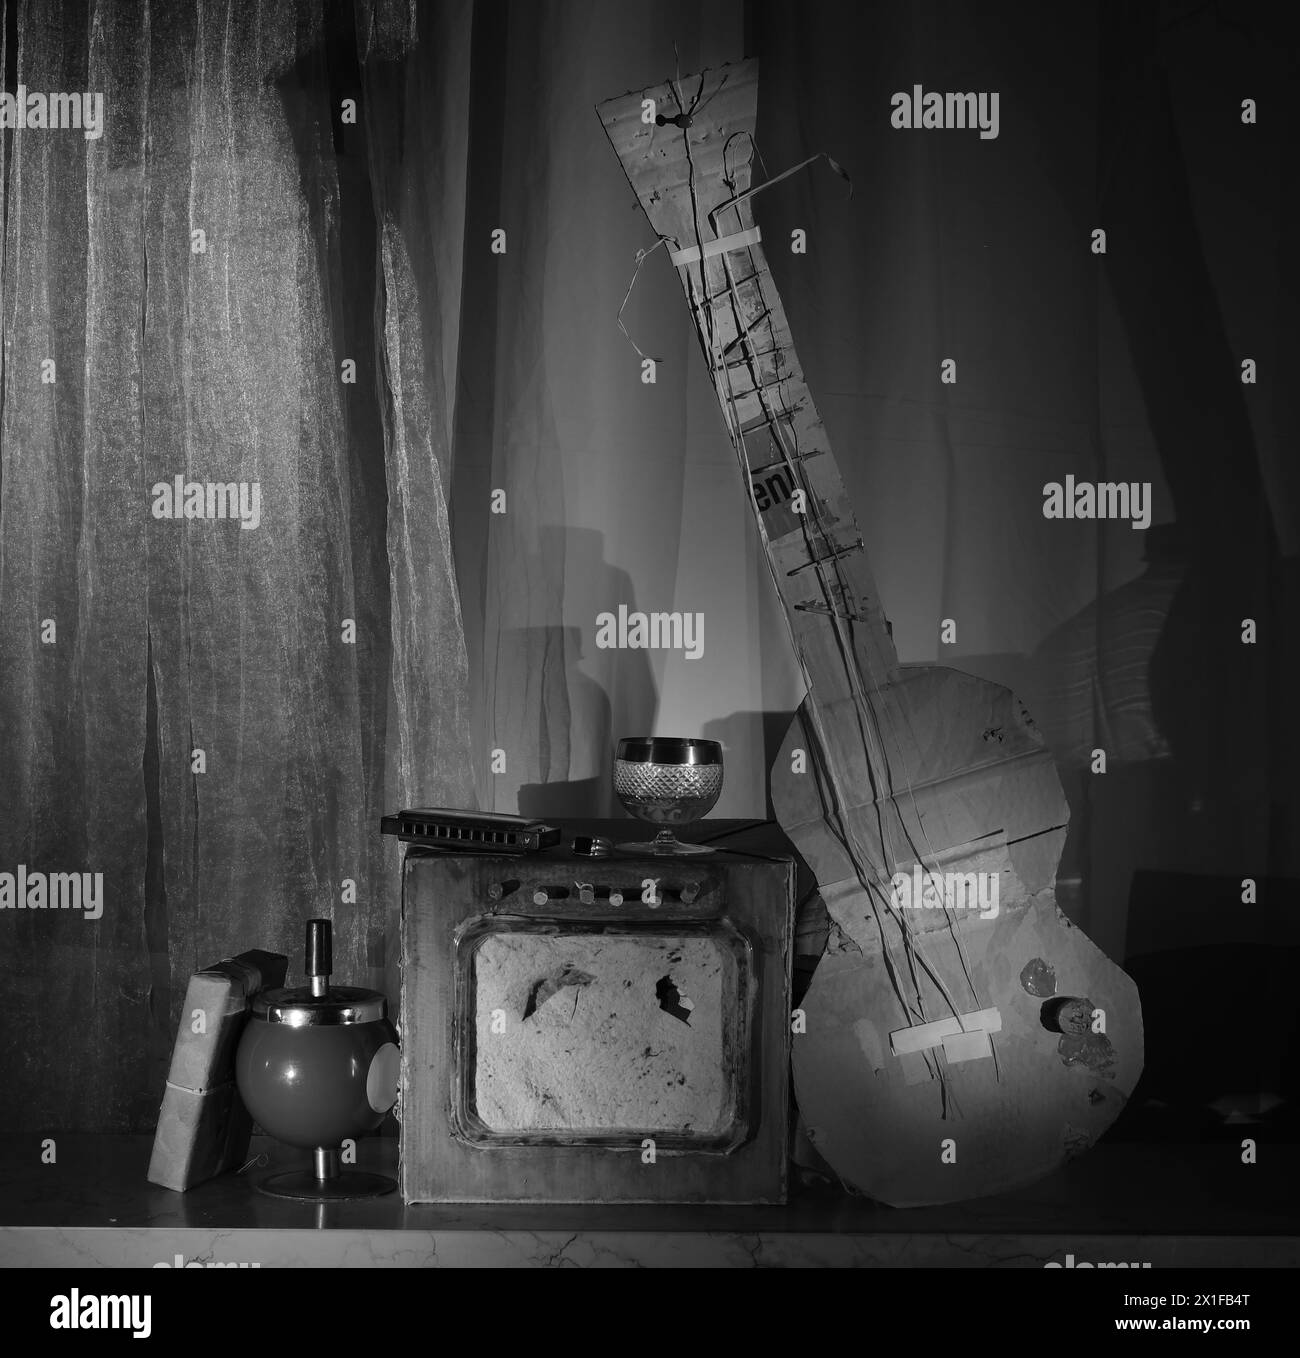 Grungy-Pappmodelle einer elektrischen Blues-Gitarre, einem rauen Verstärker und einer Mundharmonika. Musik, Performance, Blues- und Rock-Stil, Instrumente im Inneren Stockfoto